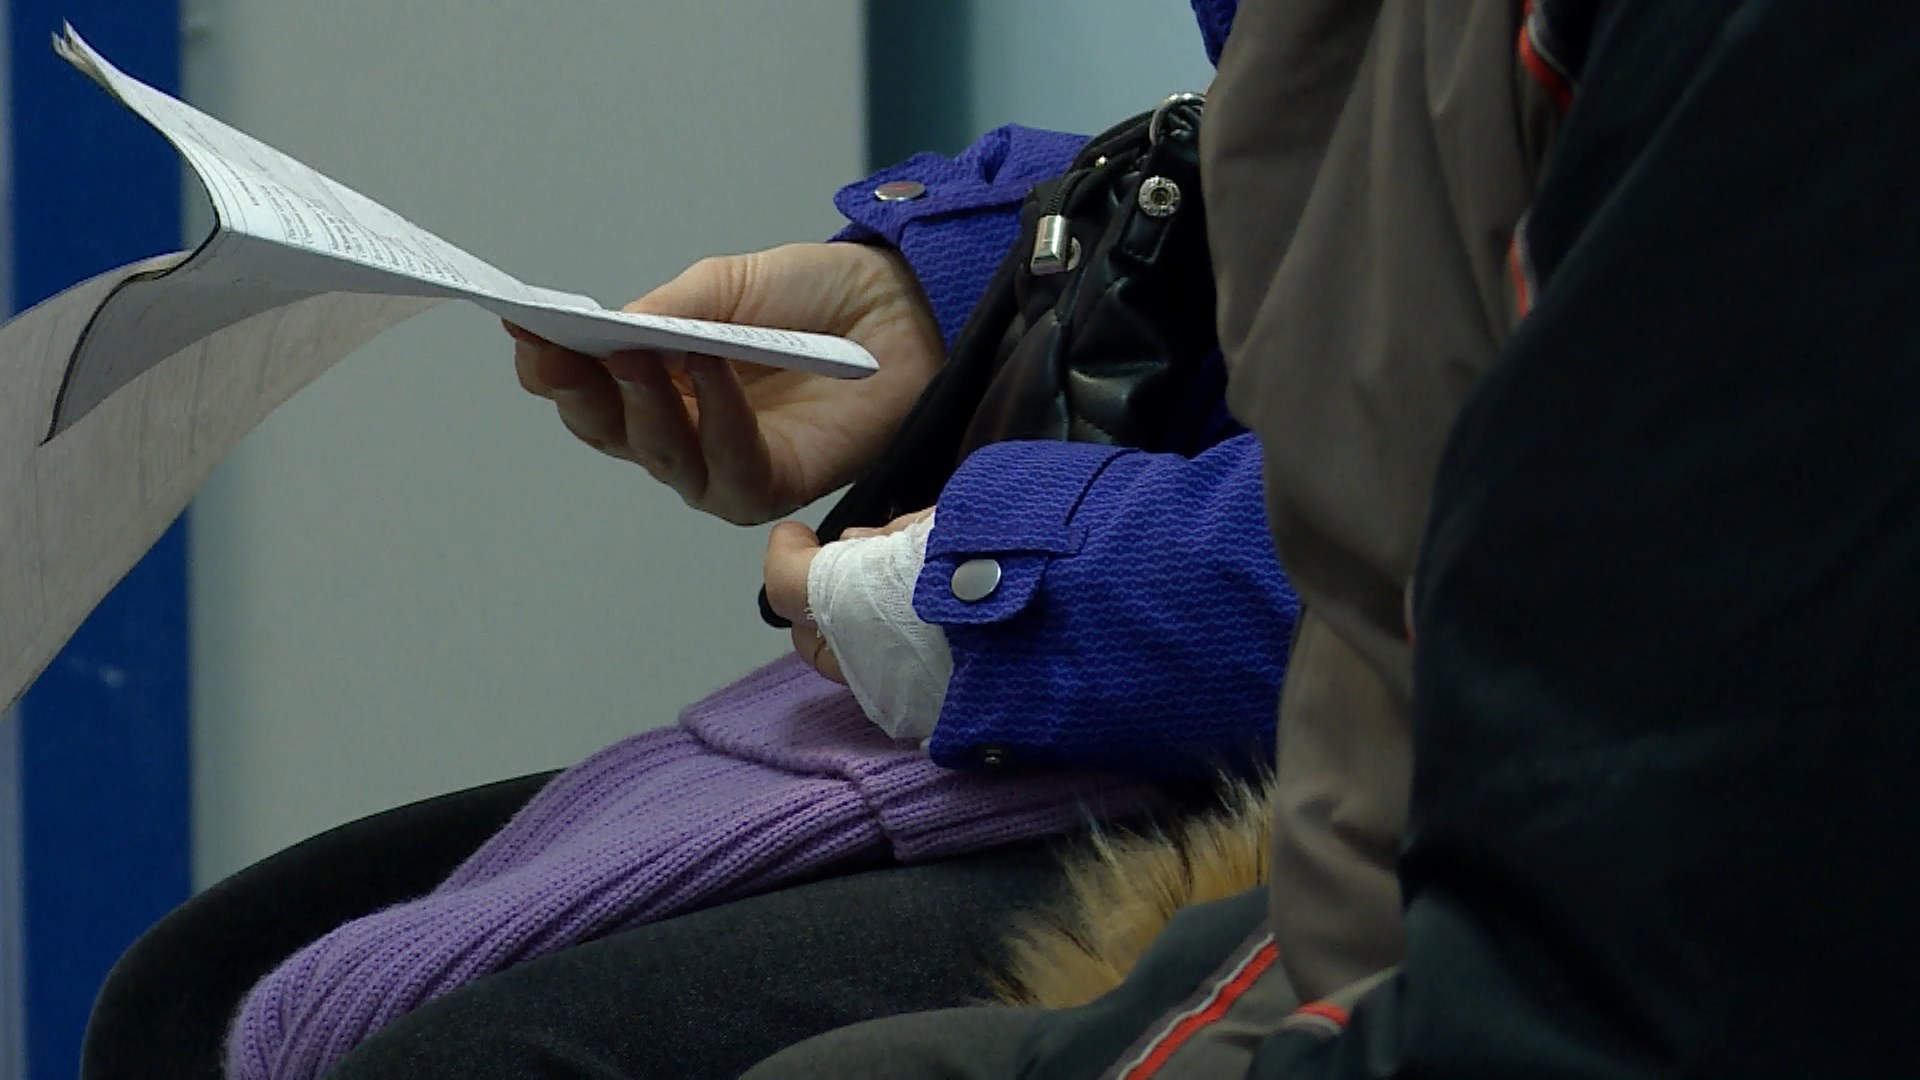 Вторые сутки подряд в Костроме врачи и медсестры без отдыха принимают людей с переломами